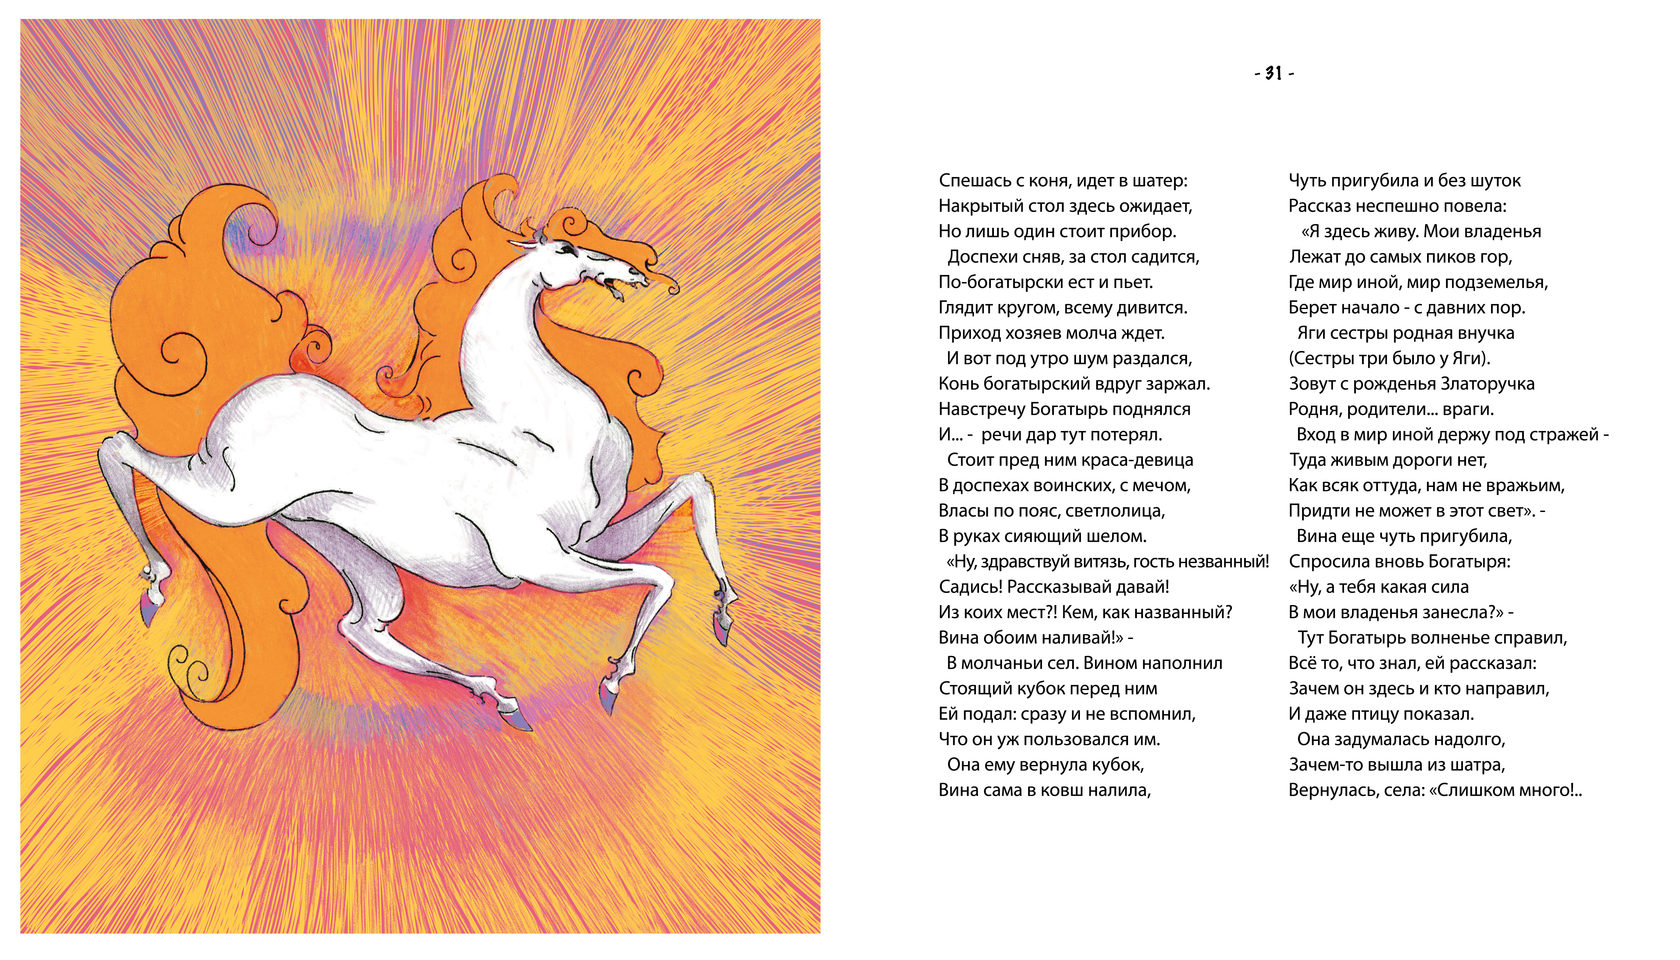 Занесло песня из трех. Стих про богатырского коня. Загадка про богатырского коня. Белый Богатырский конь Графика. Занесло песня из трех богатырей.